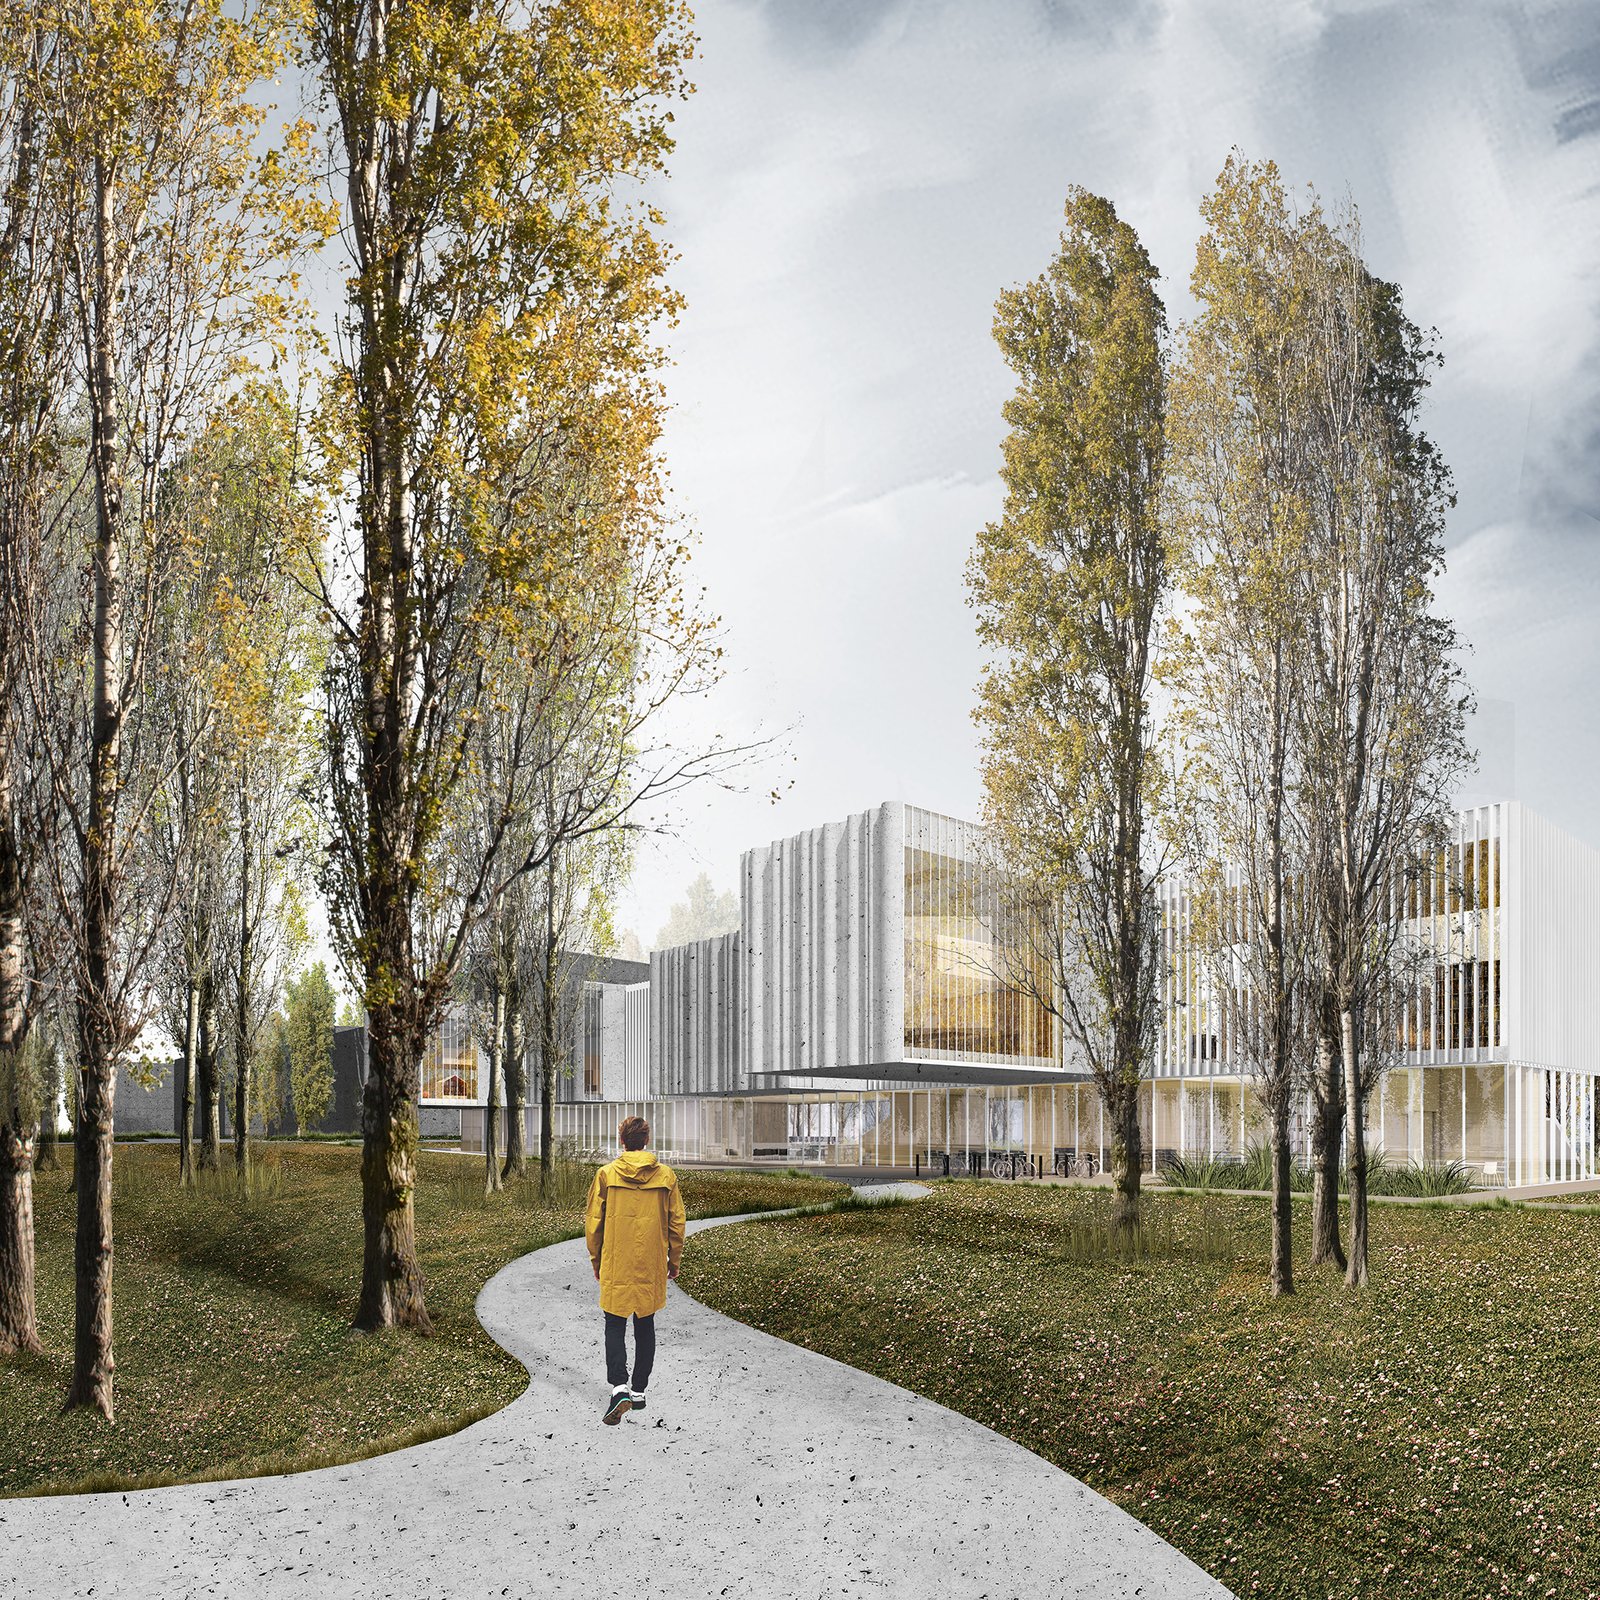 Klaipėda Atveria Duris Ateičiai: Bibliotekos Architektūrinio Projekto Konkursas